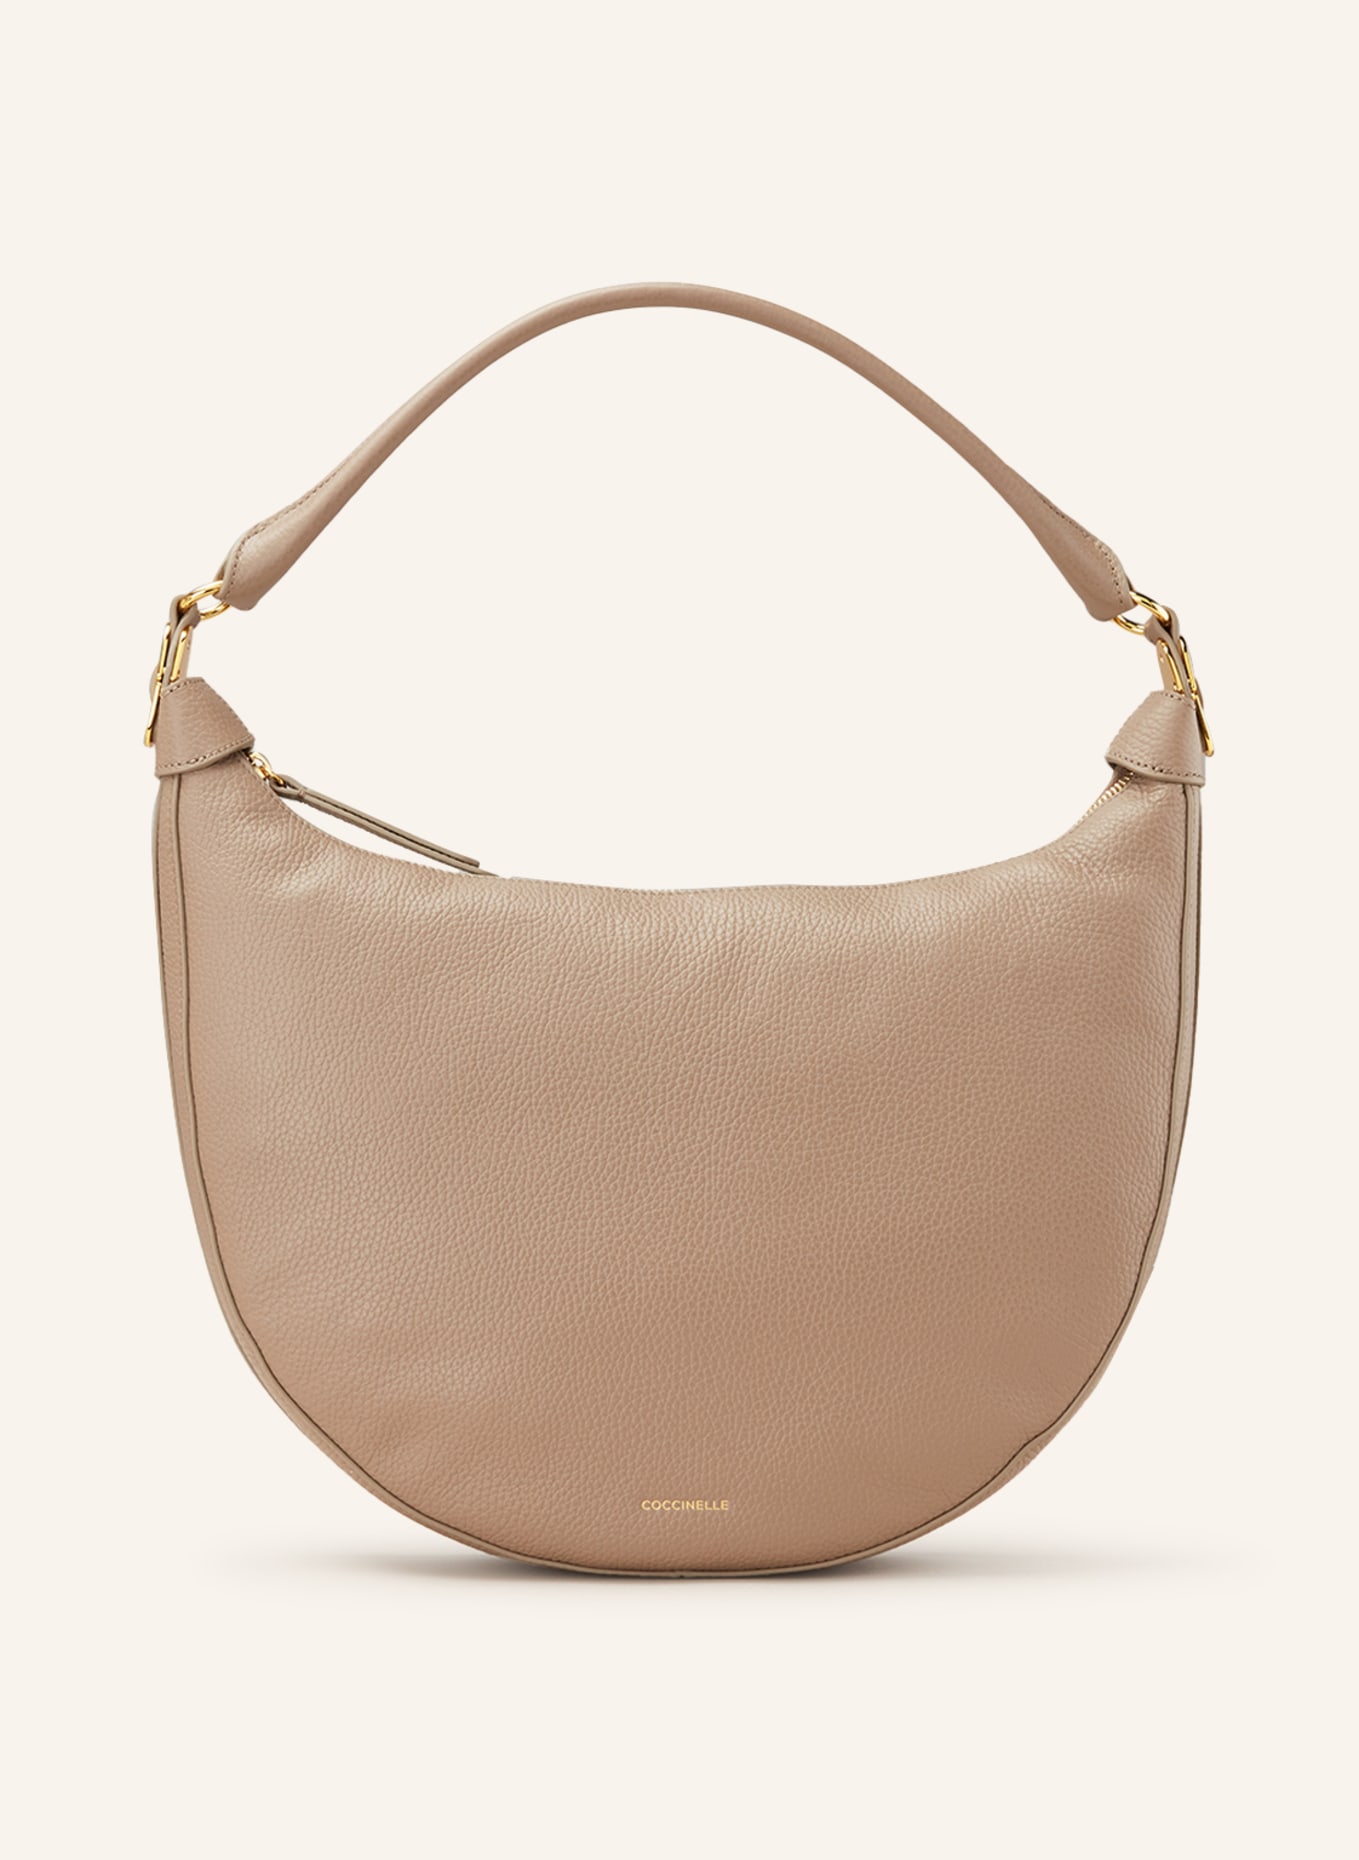 COCCINELLE Hobo-Bag, Farbe: TAUPE (Bild 1)